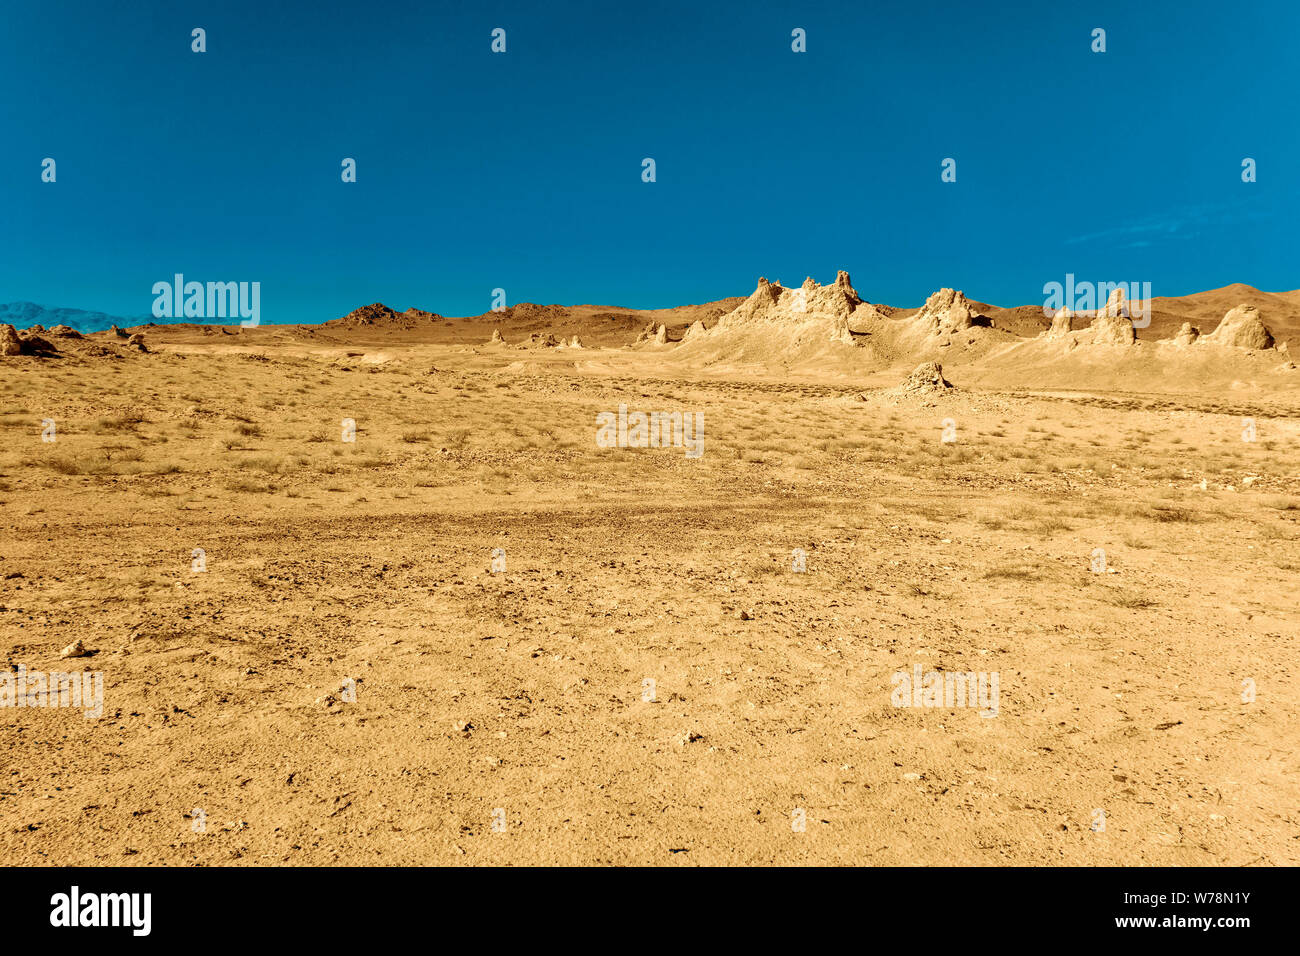 Luce marrone giallo deserto piano valley con formazioni rocciose sotto cieli azzurri. Foto Stock